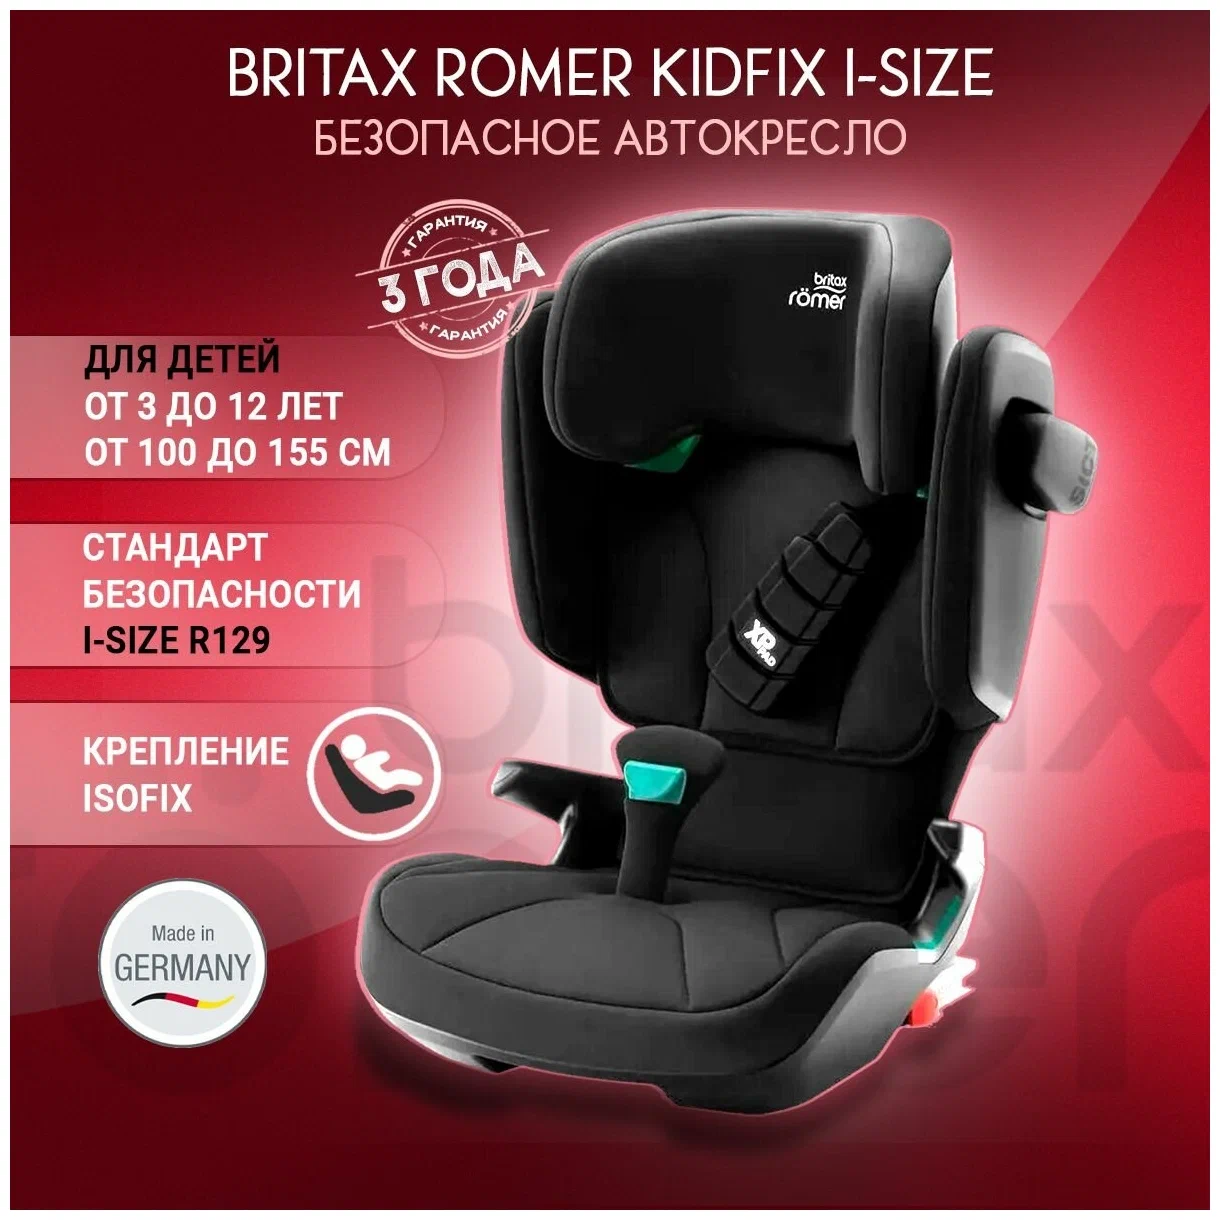 Кресло britax romer kidfix 2 r